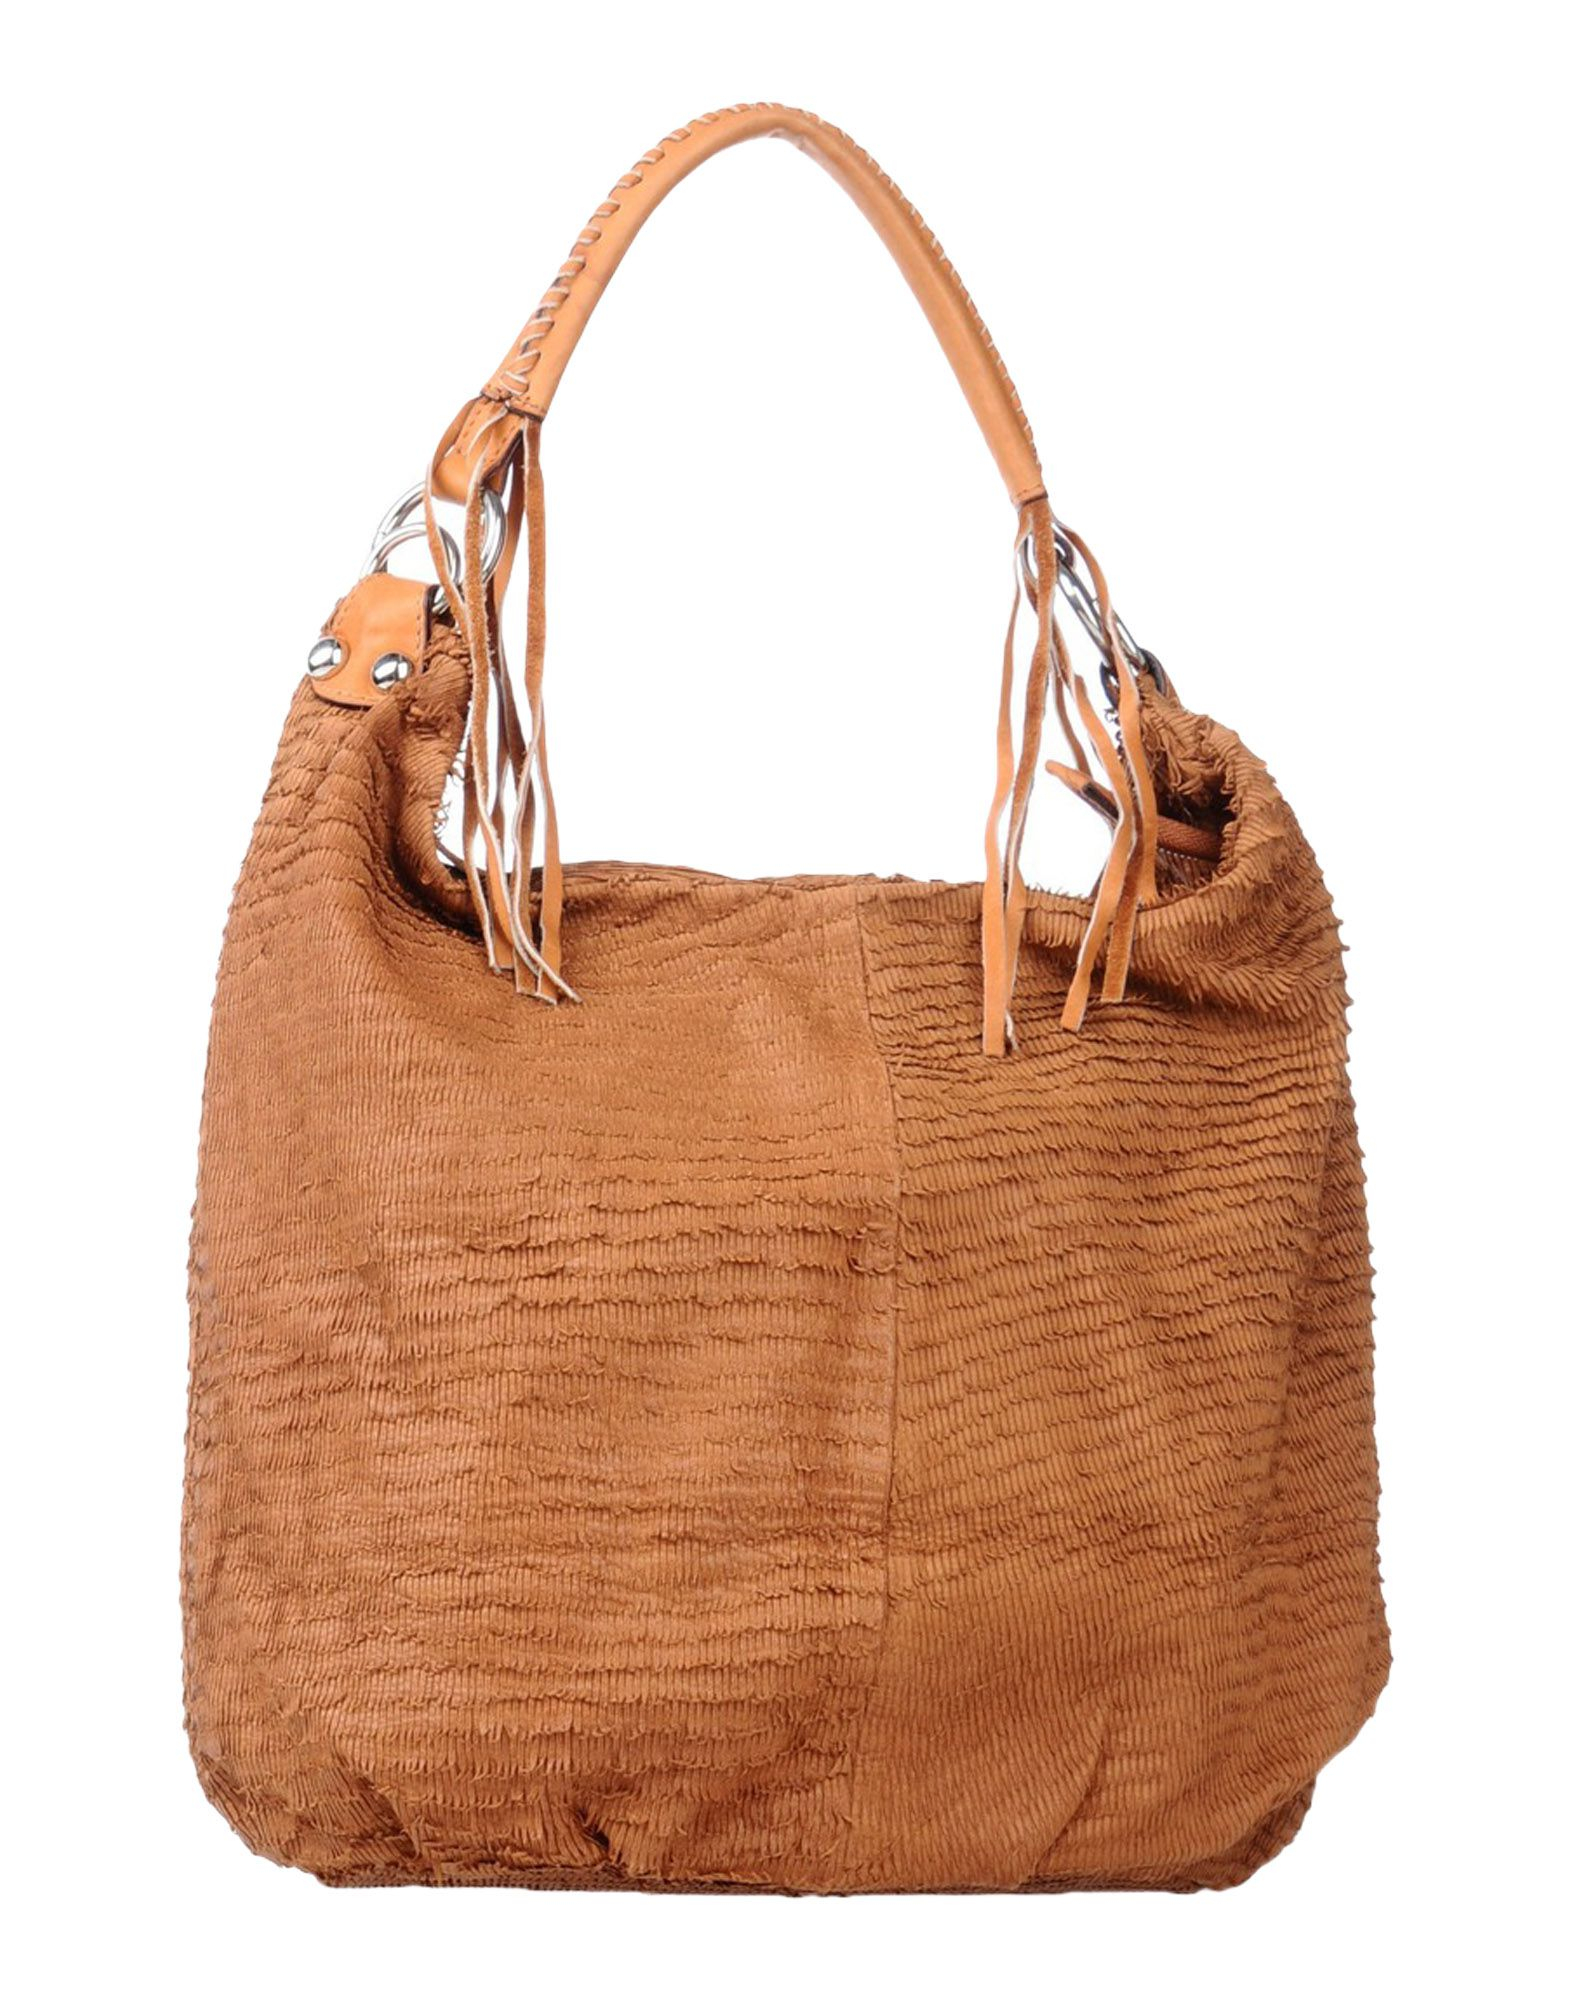 Tsd12 Handbag in Beige (Camel) | Lyst